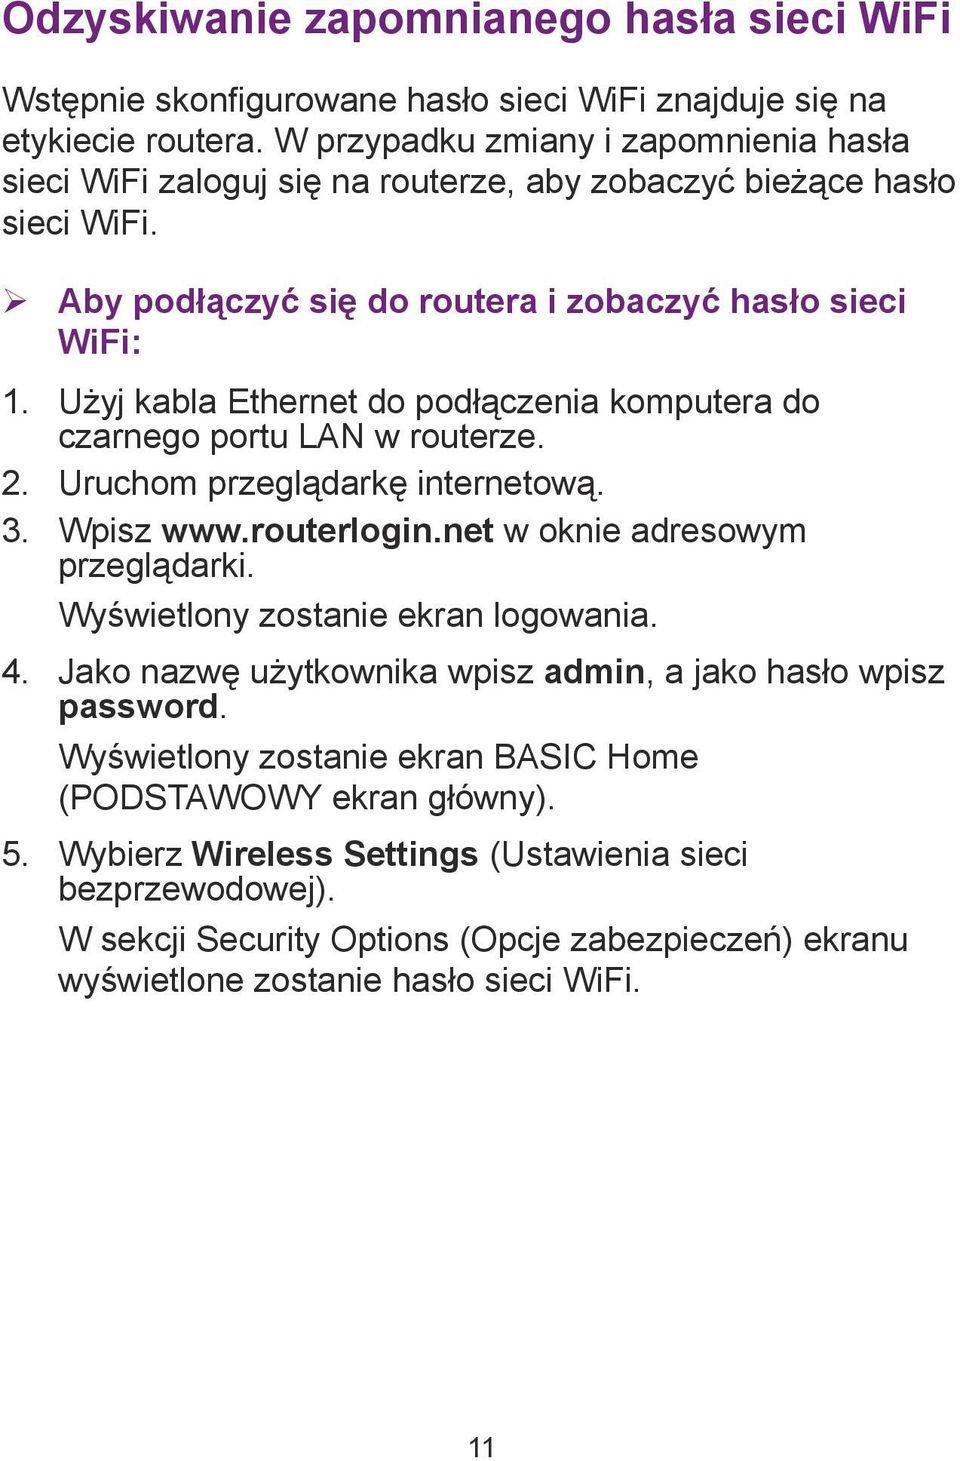 Użyj kabla Ethernet do podłączenia komputera do czarnego portu LAN w routerze. 2. Uruchom przeglądarkę internetową. 3. Wpisz www.routerlogin.net w oknie adresowym przeglądarki.